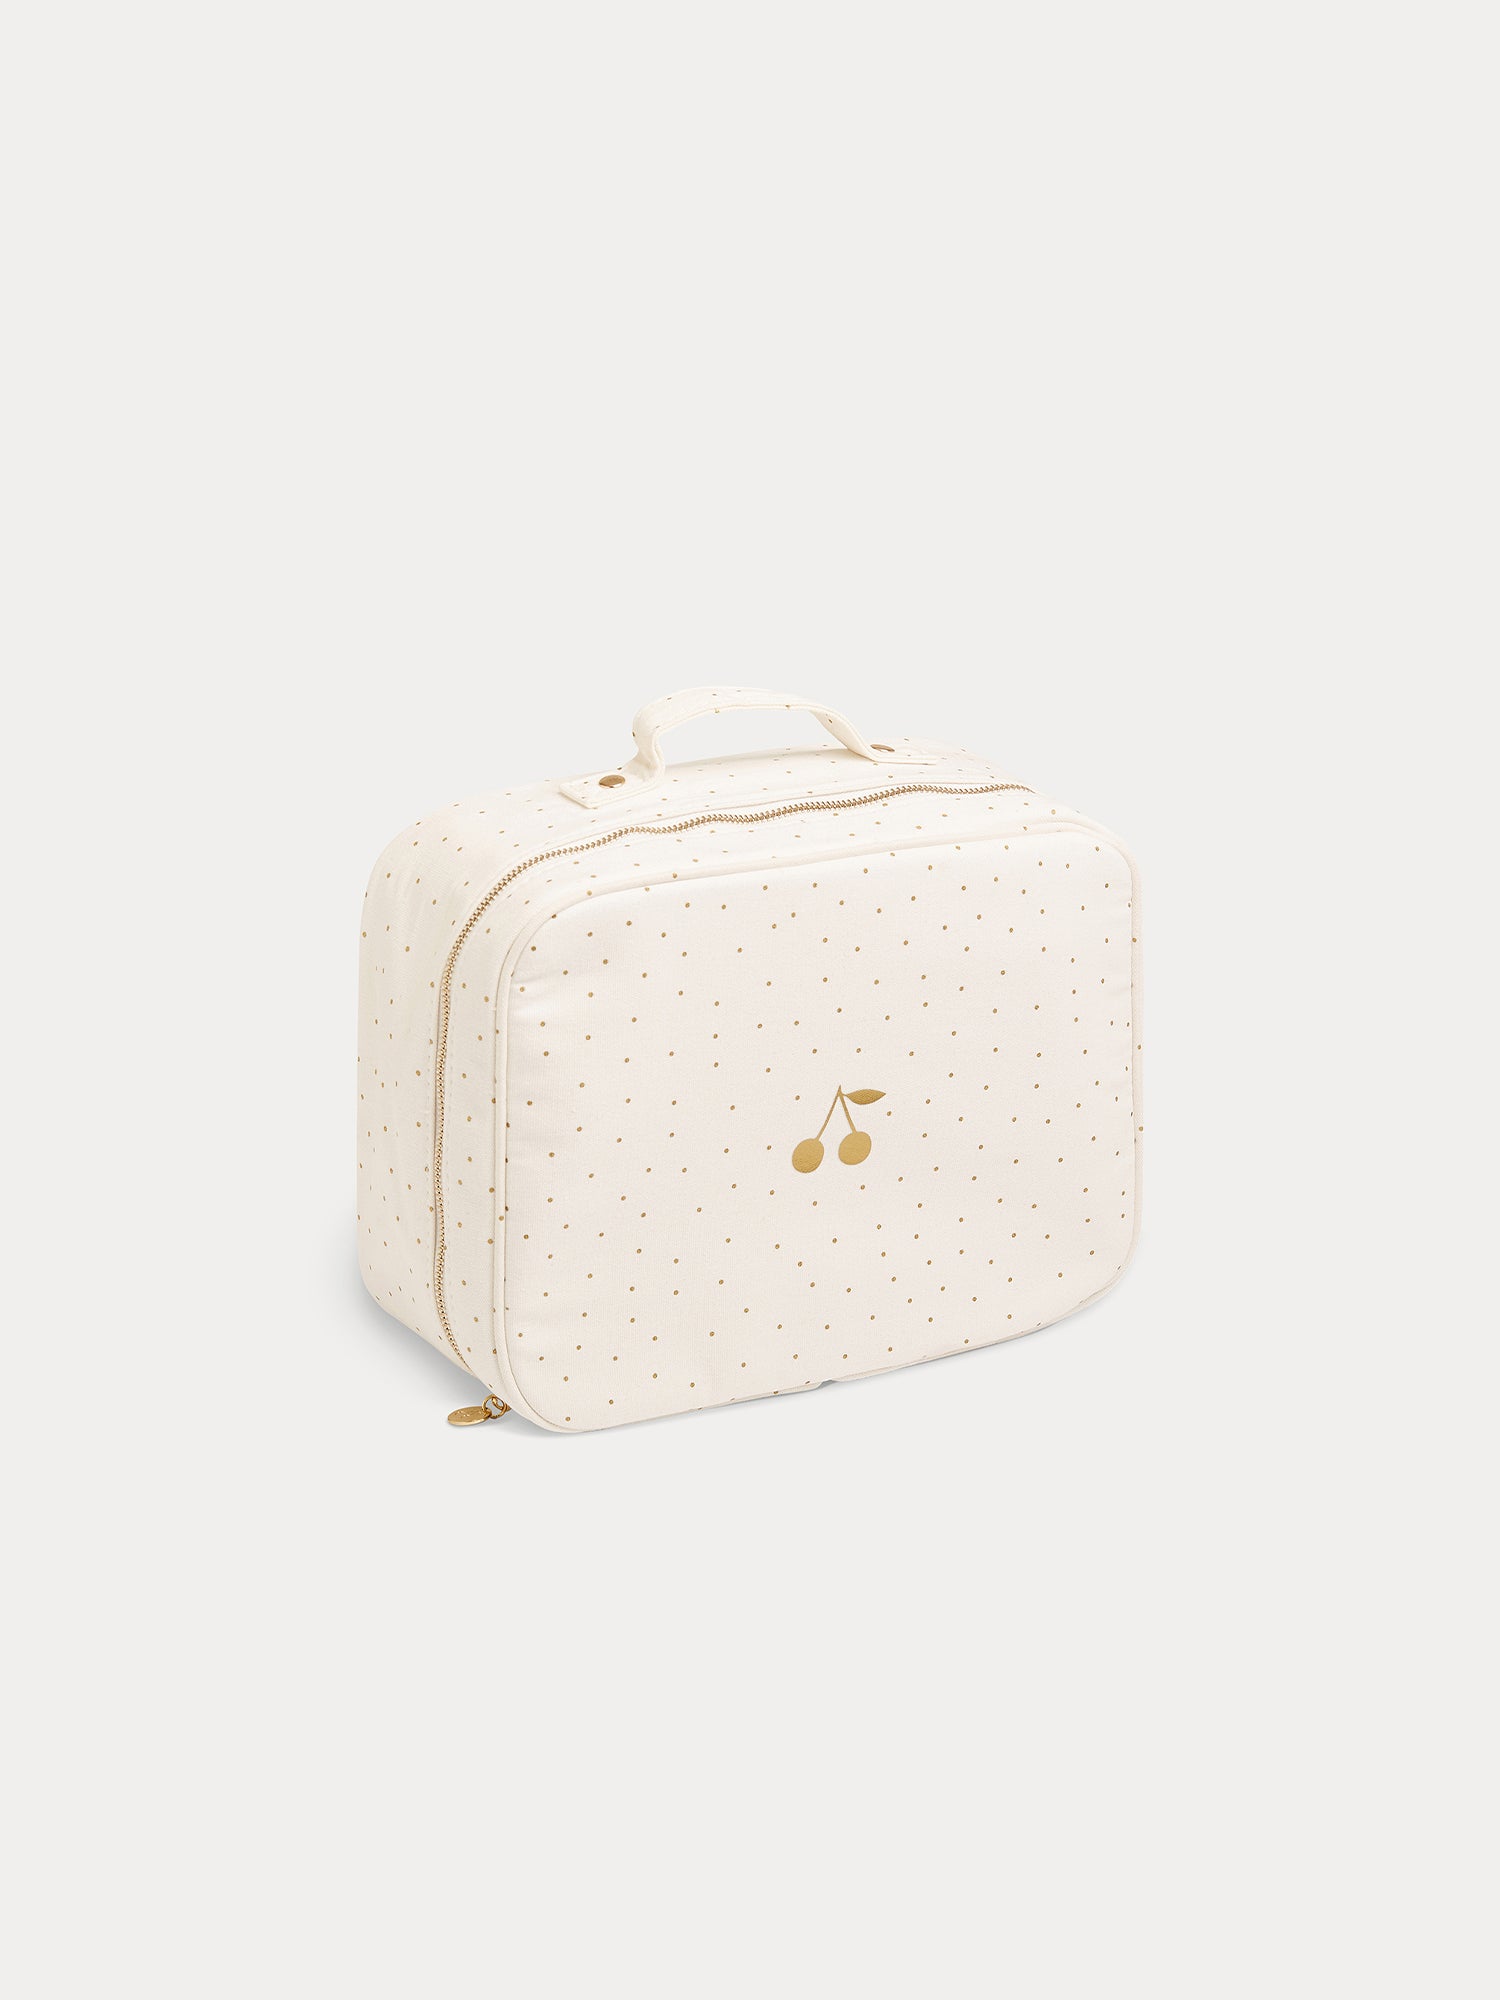 Baby Size 2 Medium Suitcase gold | baby essentials • Bonpoint